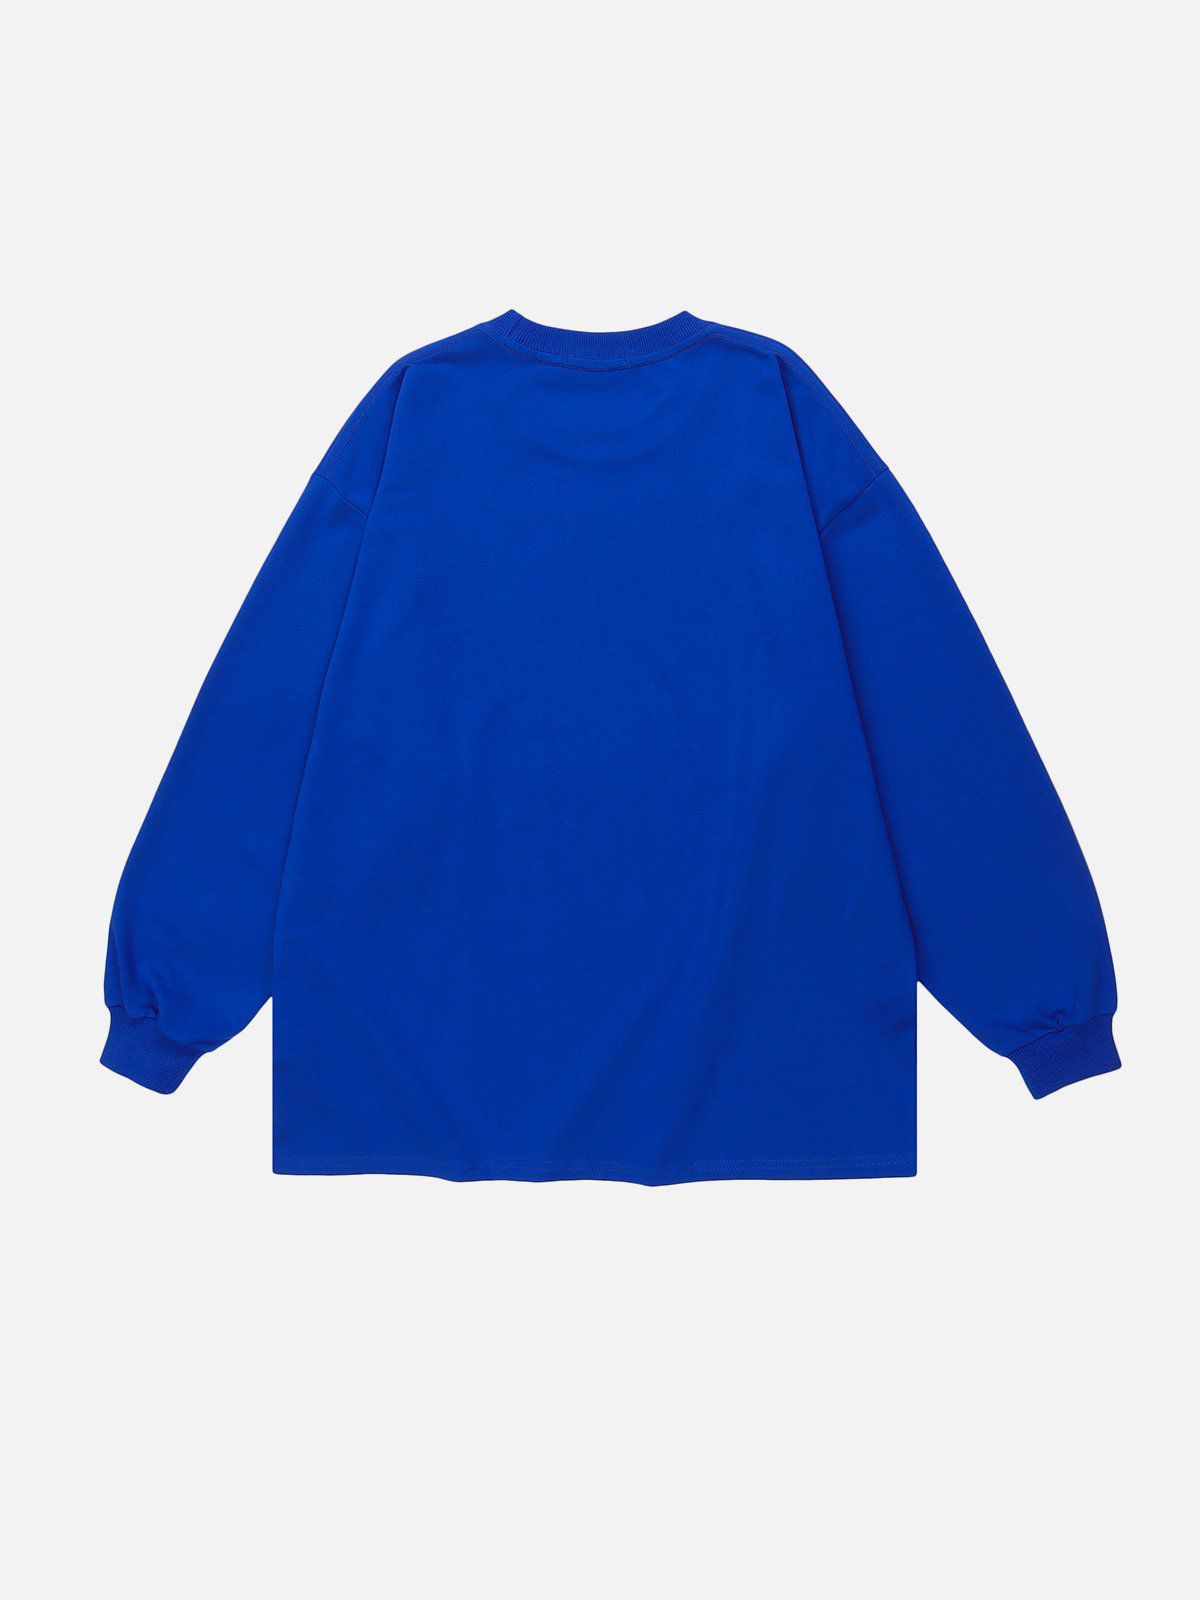 LUXENFY™ - “SENSELESS” Print Sweatshirt luxenfy.com